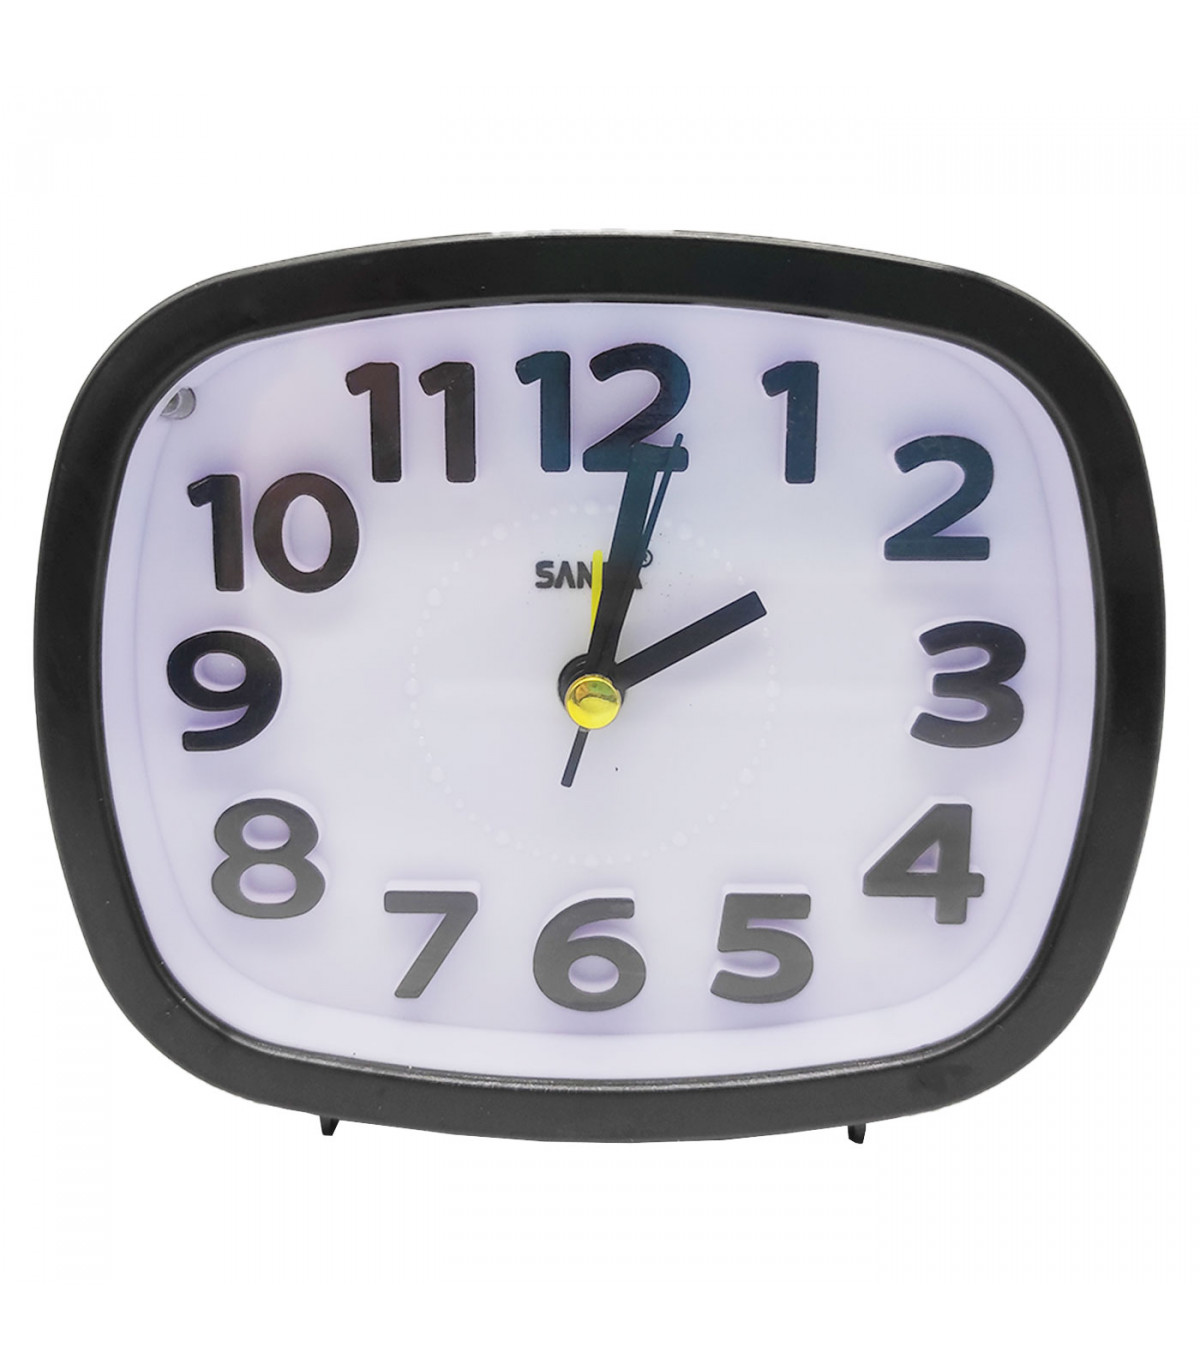 Reloj despertador silencioso con luz y alarma, plástico, función snooze,  funcionamiento con pila, 10 x 11,6 x 3,9 cm, color alea